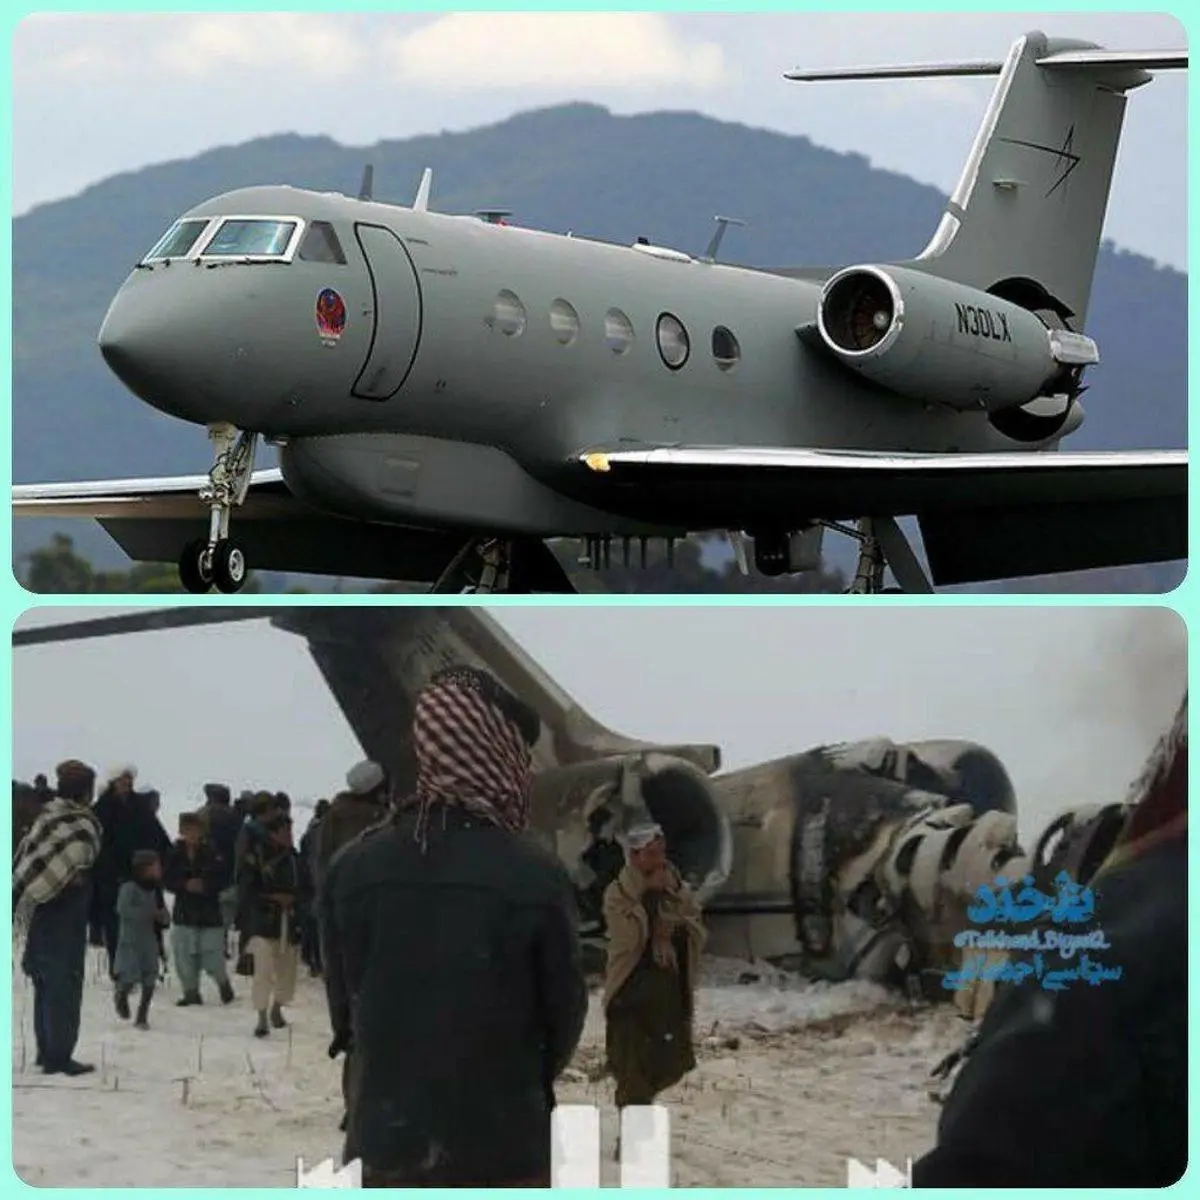 ادعای عجیب درباره سقوط هواپیما در افغانستان +عکس